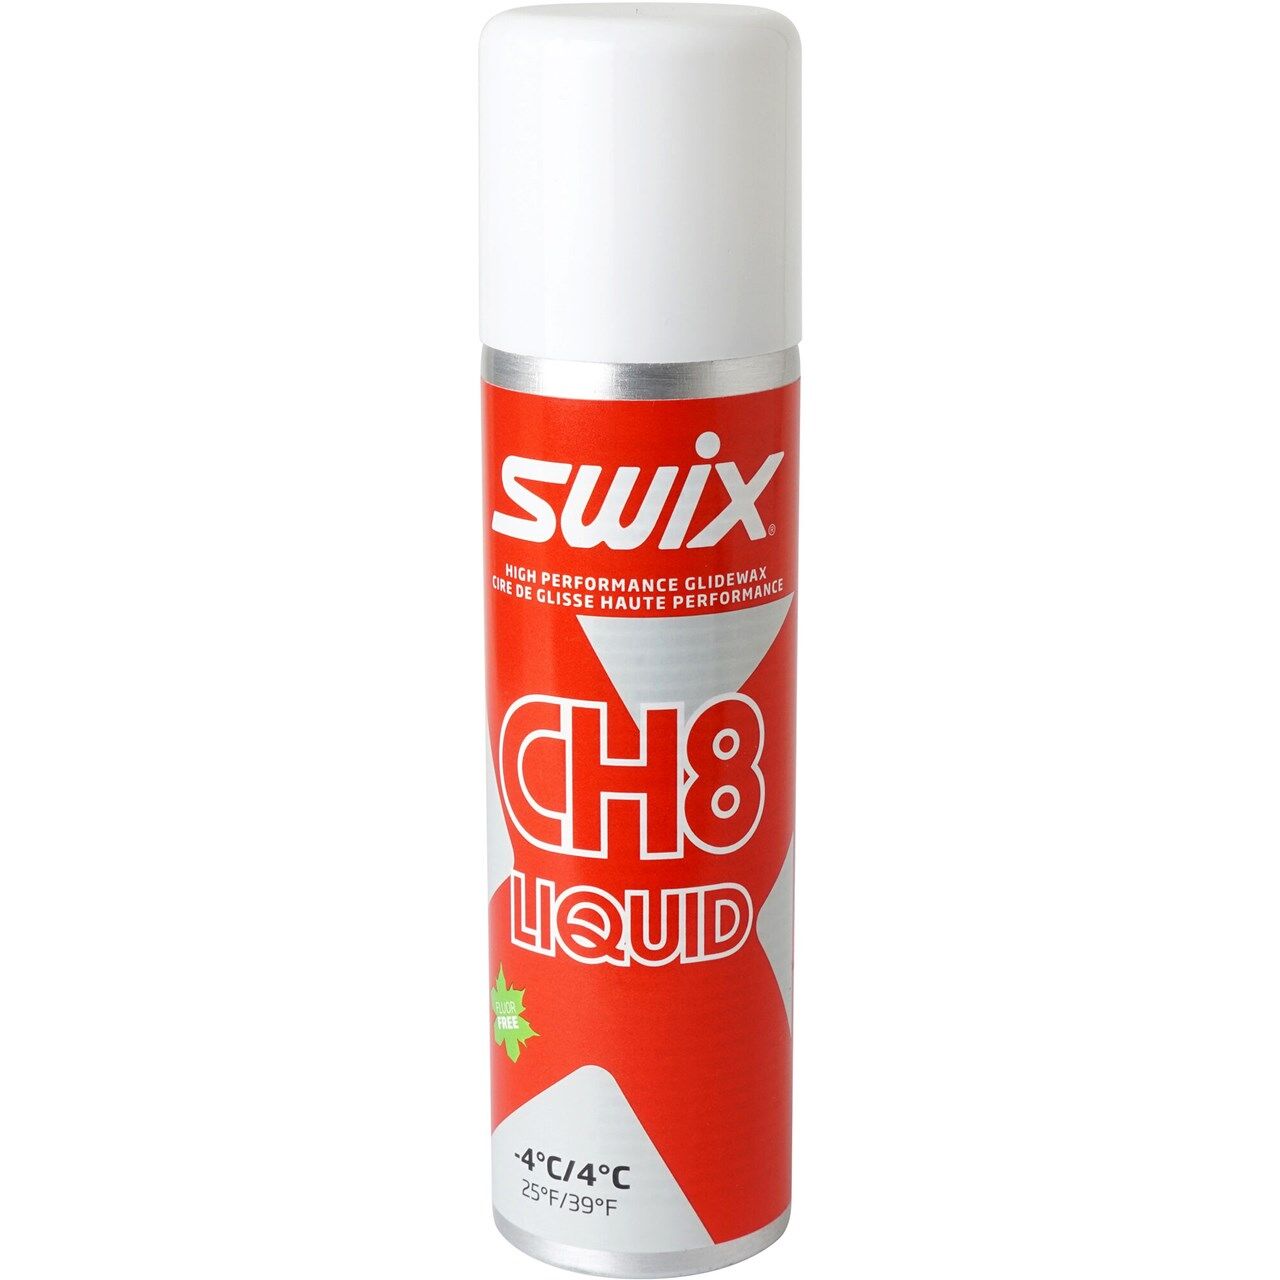 Swix CH08X Liquid -4C/+4C (125ml) - Skivoks